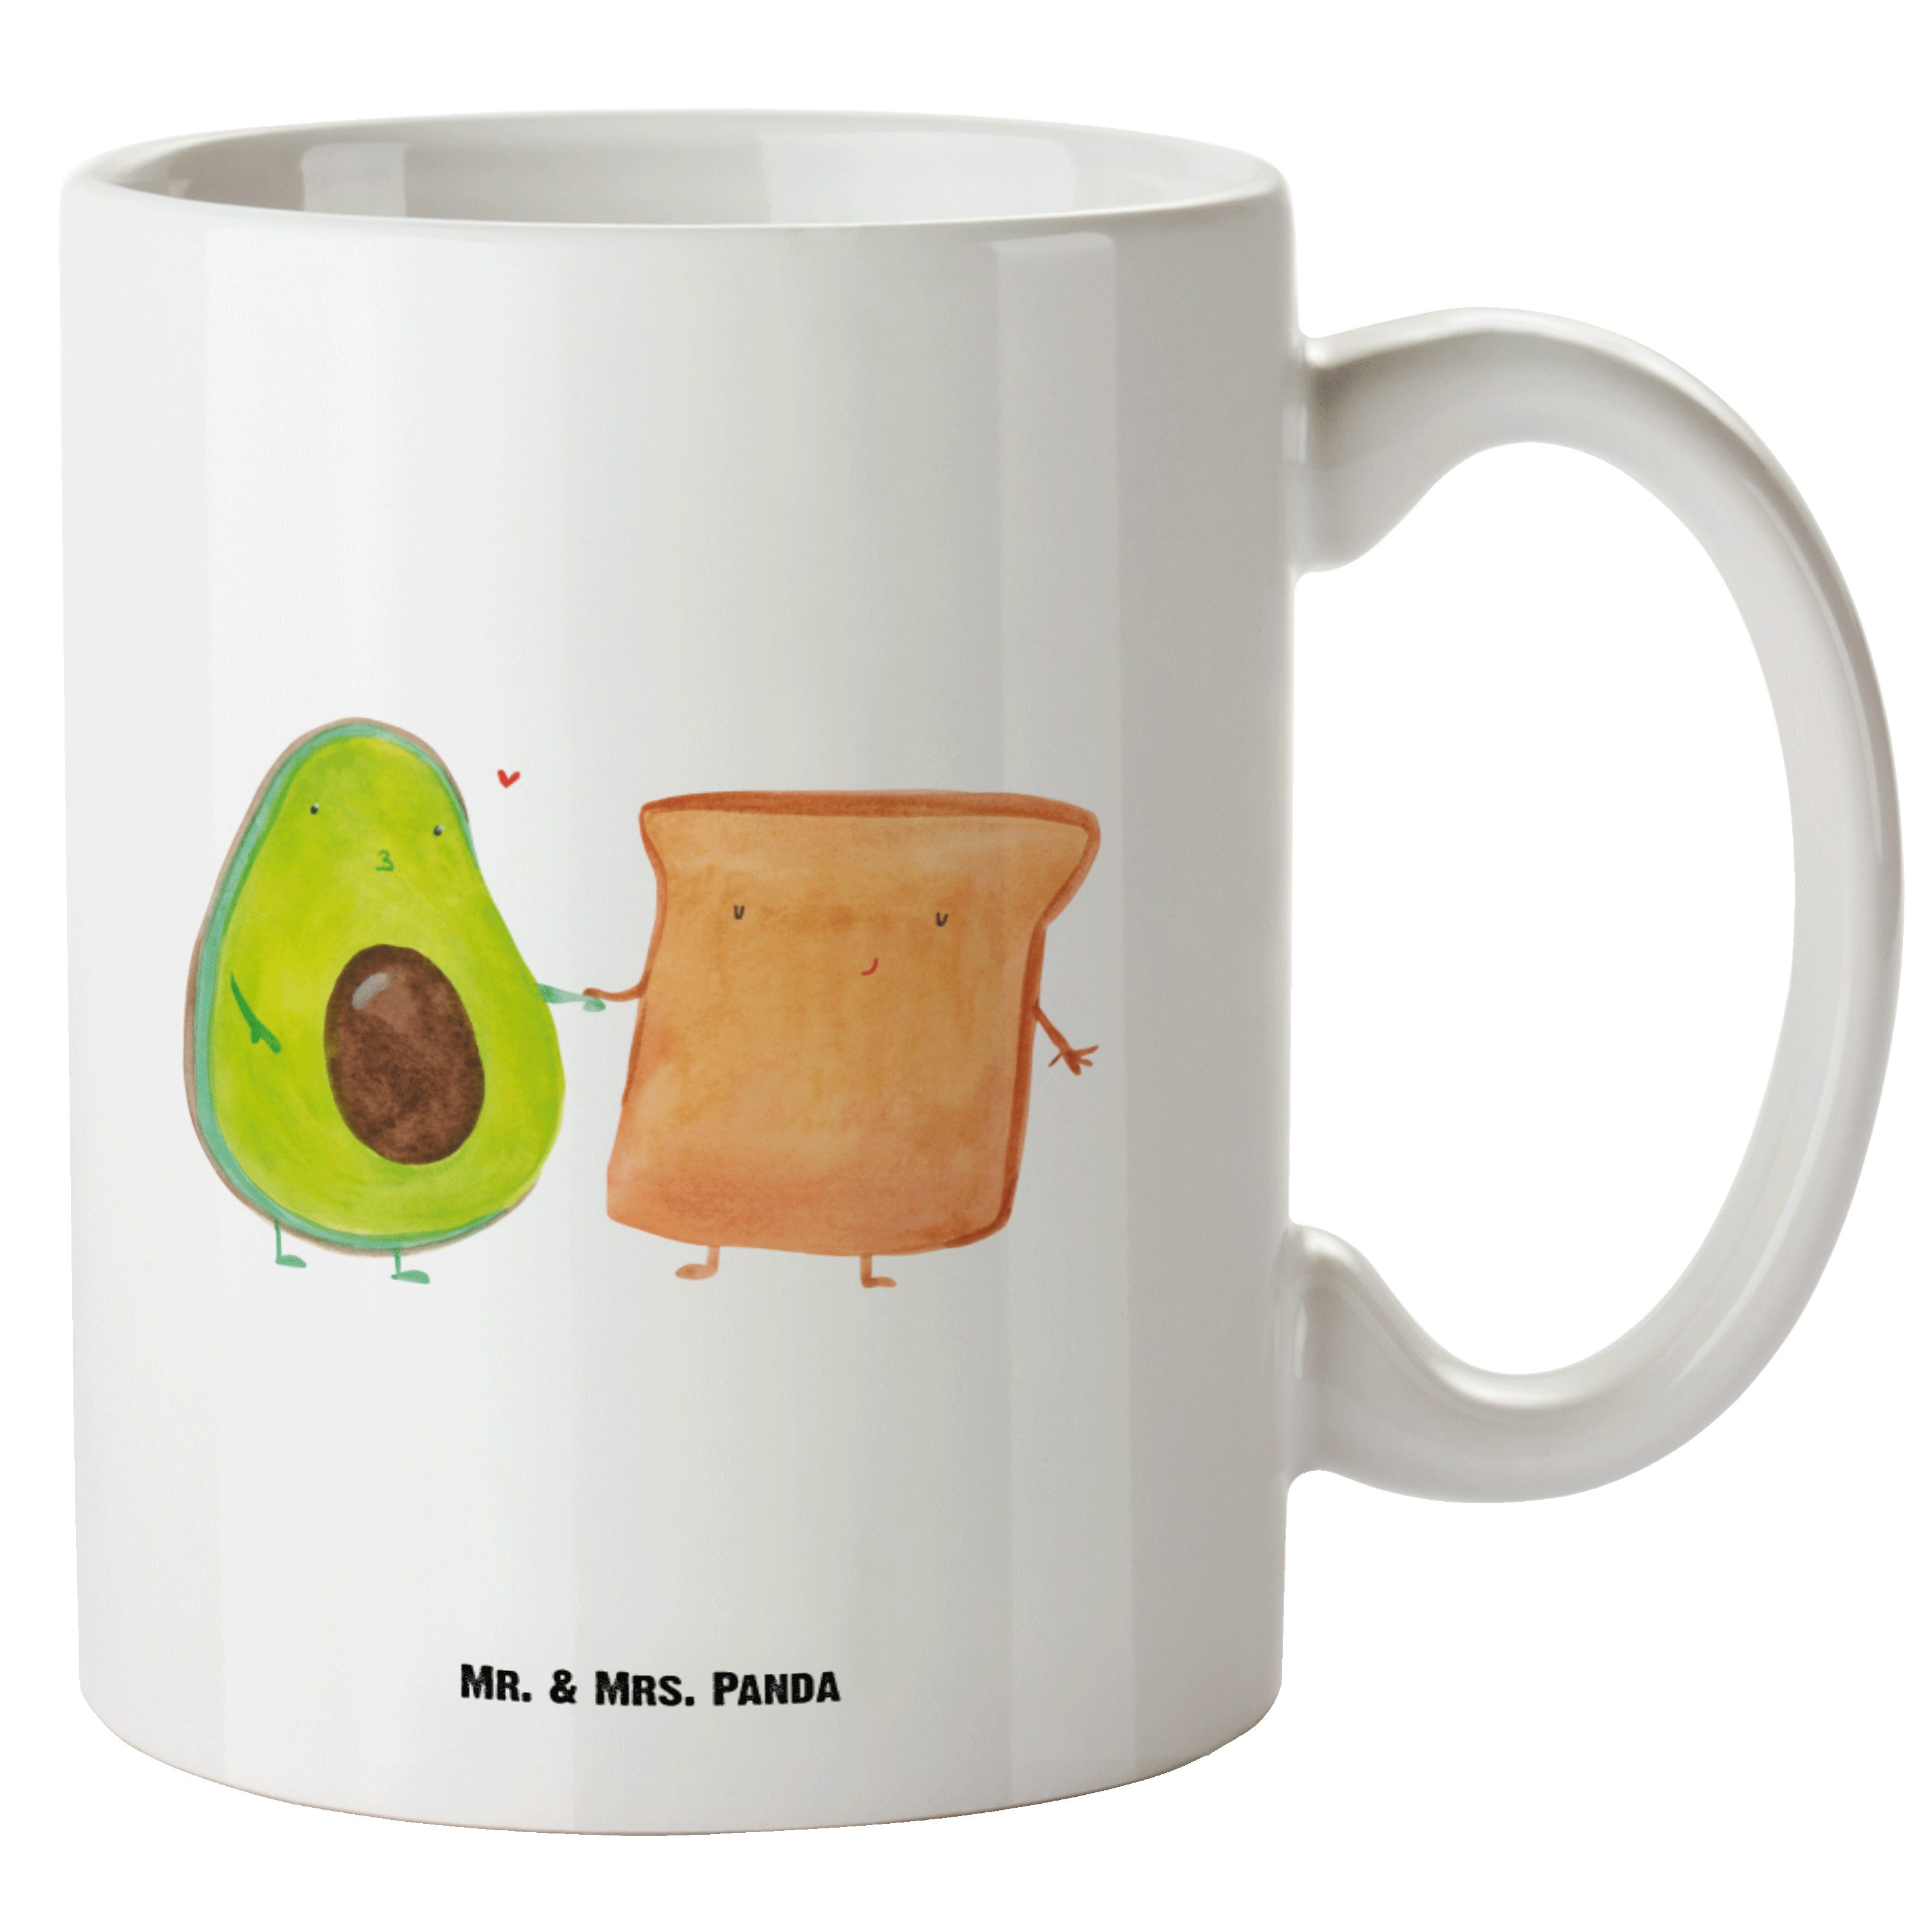 Mr. & Mrs. Panda Tasse Avocado + Toast - Weiß - Geschenk, Vegan, Verlobt, Gesund, Liebespaar, XL Tasse Keramik